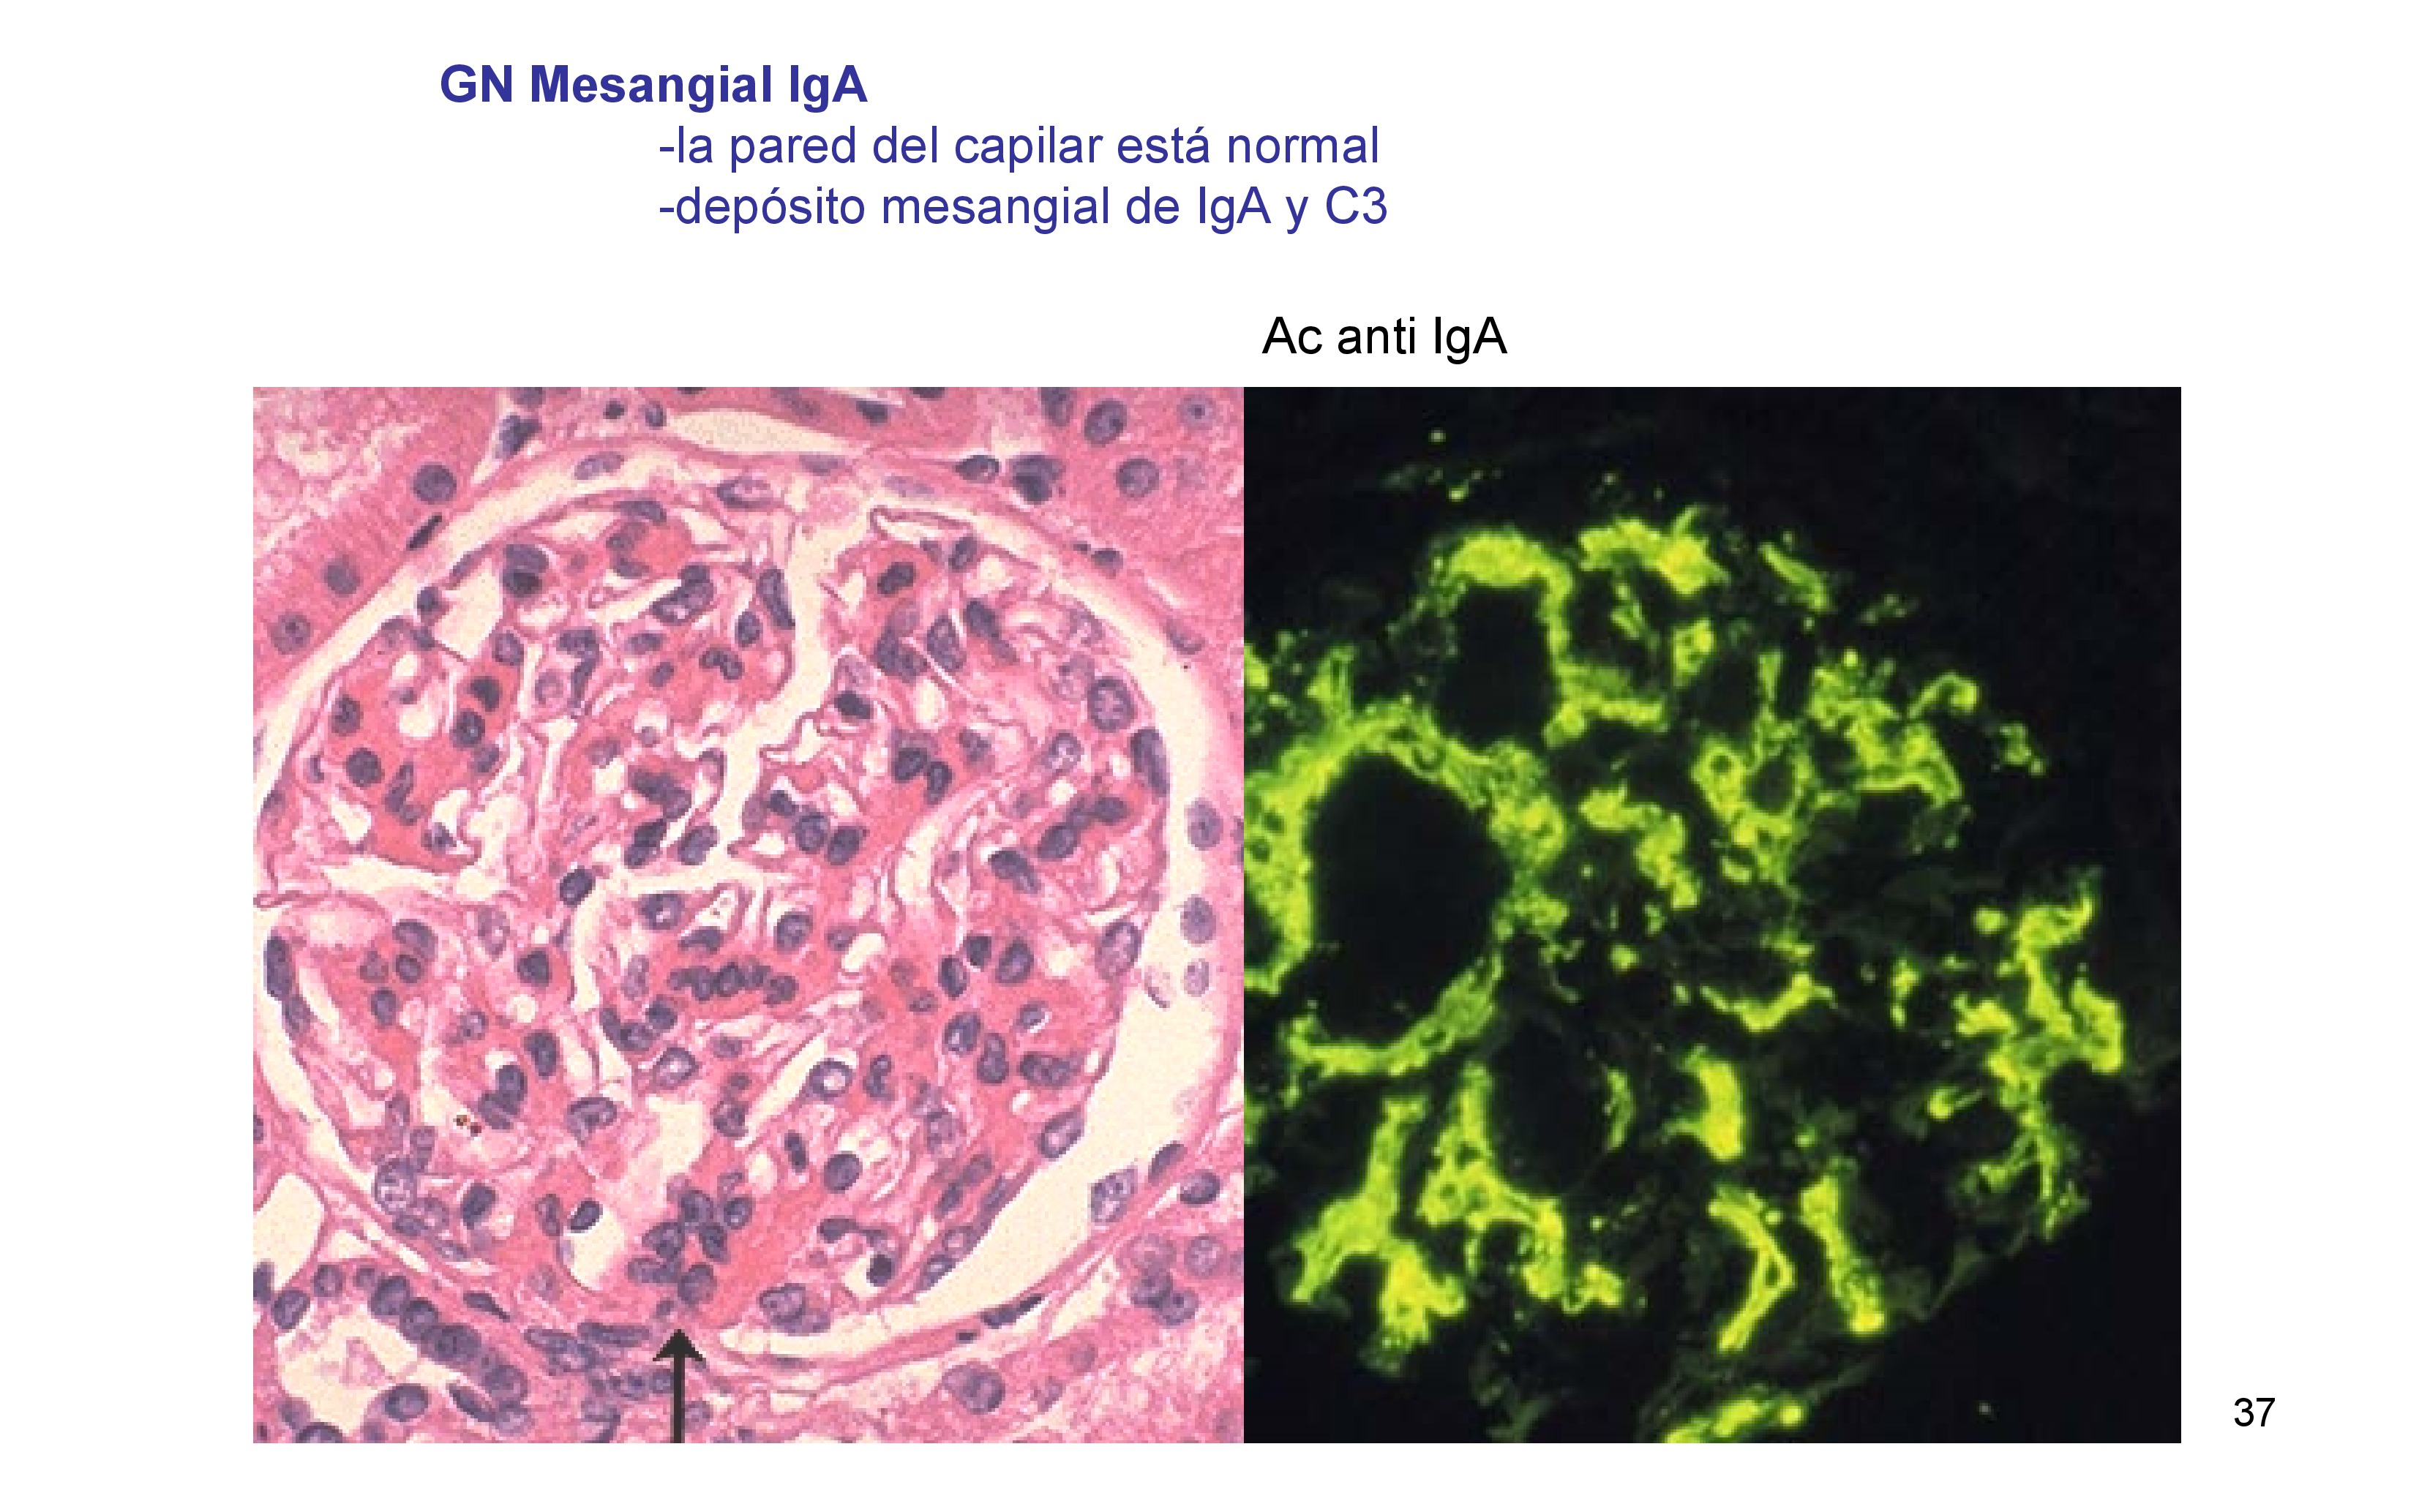 Biopsia típica de una glomerulonefritis mesangial IgA , la pared de los capilares esta normal, hay proliferación mesangial : 

Mas de tres células por área mesangial y depósitos de IgA y C3 en la inmunofluorescencia. 
